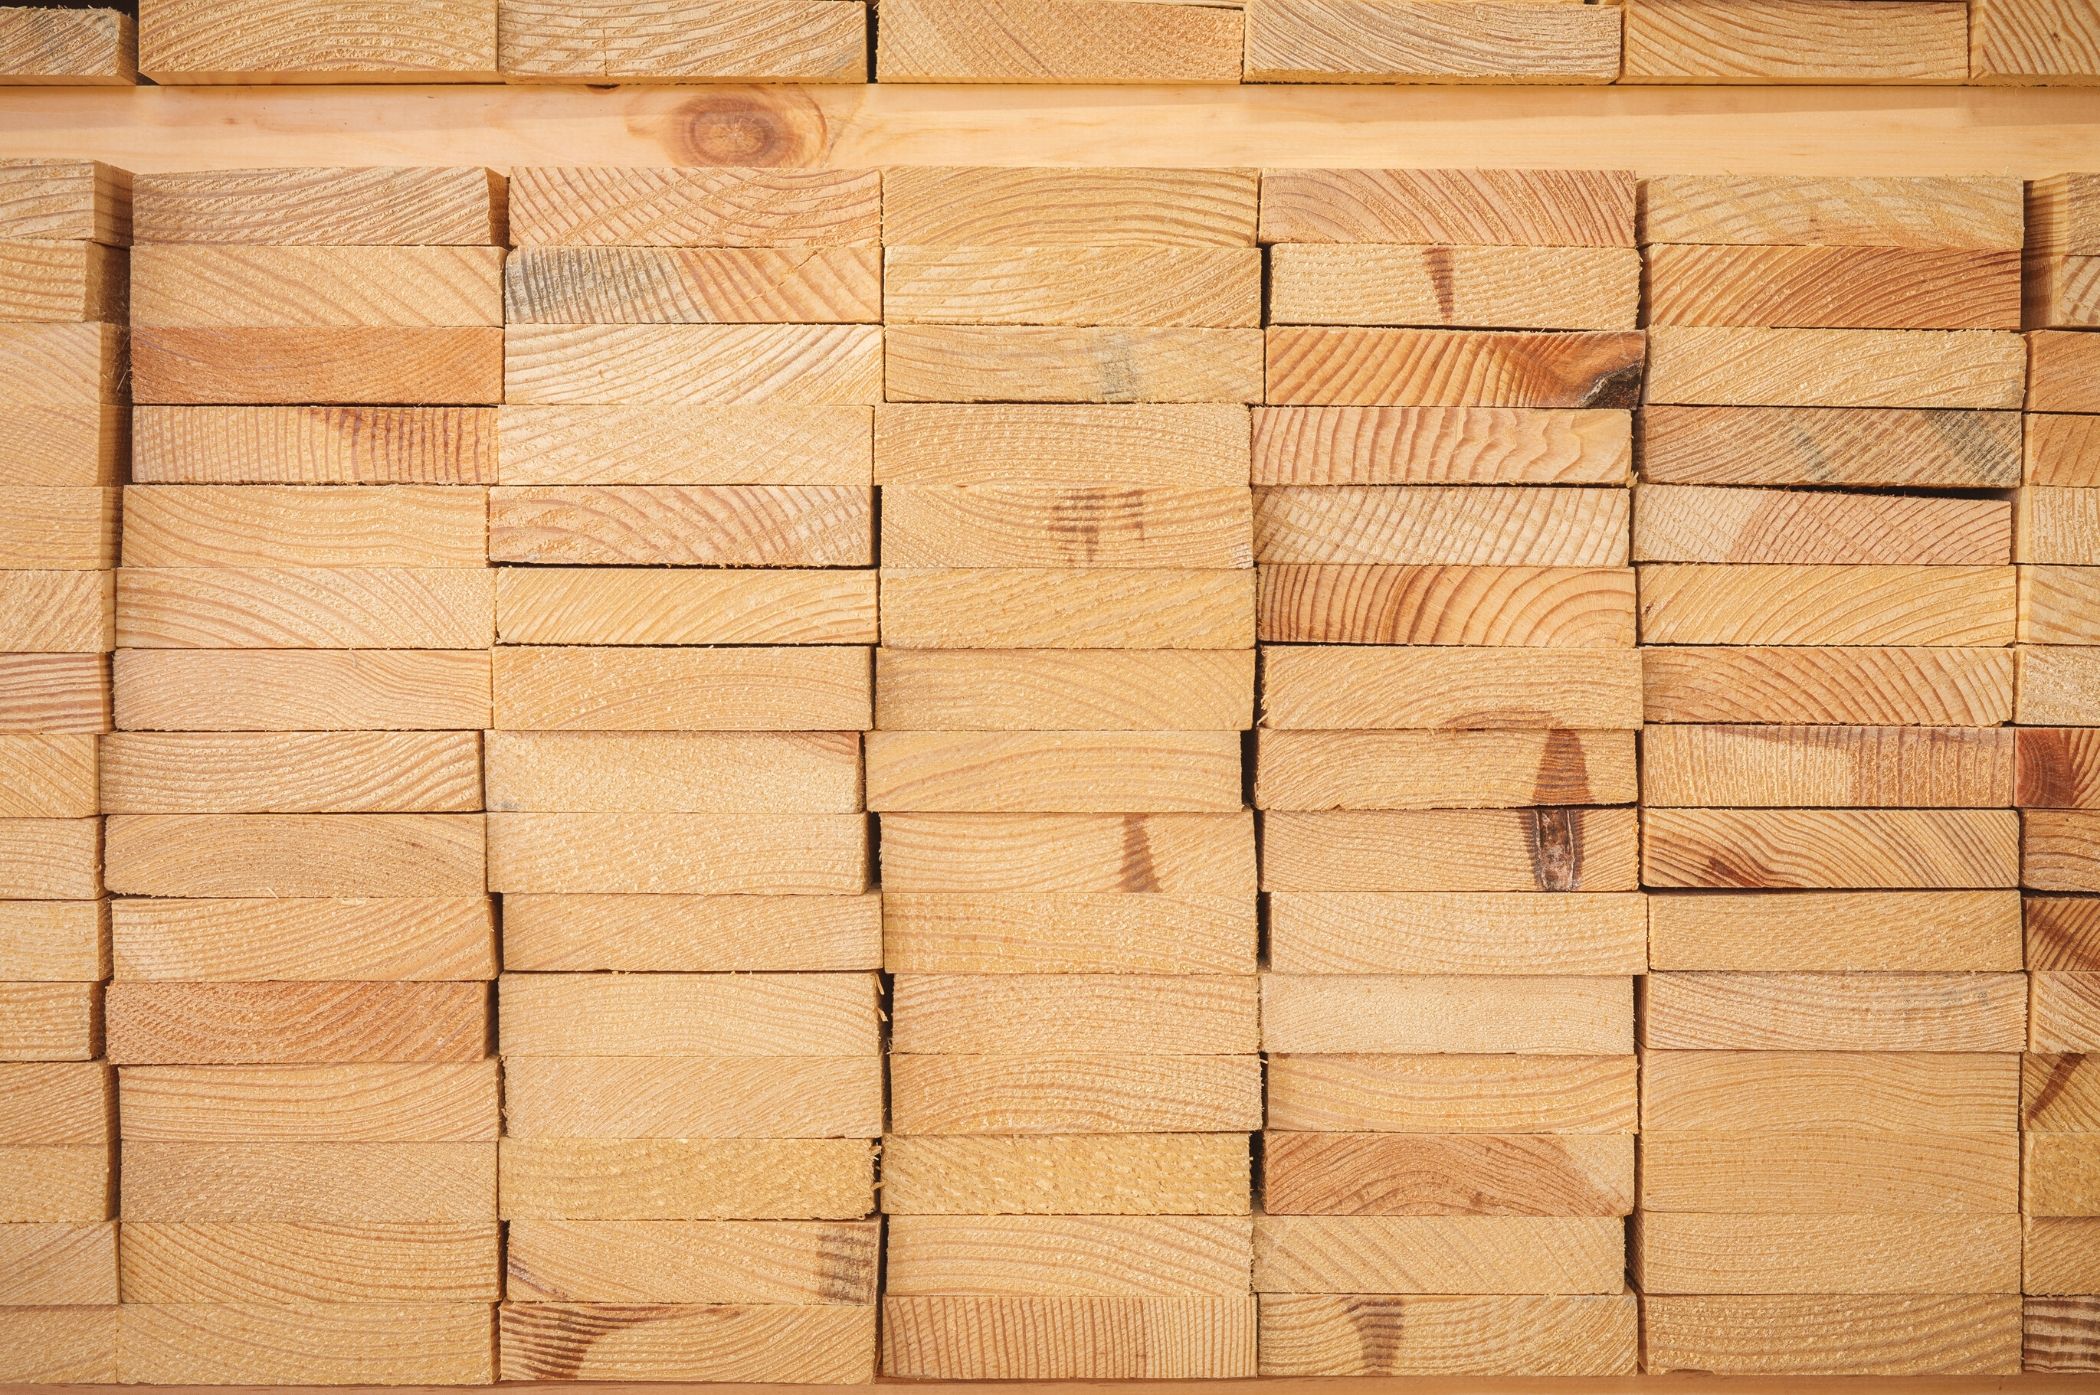 Cấu trúc gỗ sồi dạng chai, tế bào gỗ có độ gắn kết vô cùng chặt chẽ, vì vậy sẽ không bị thấm nước